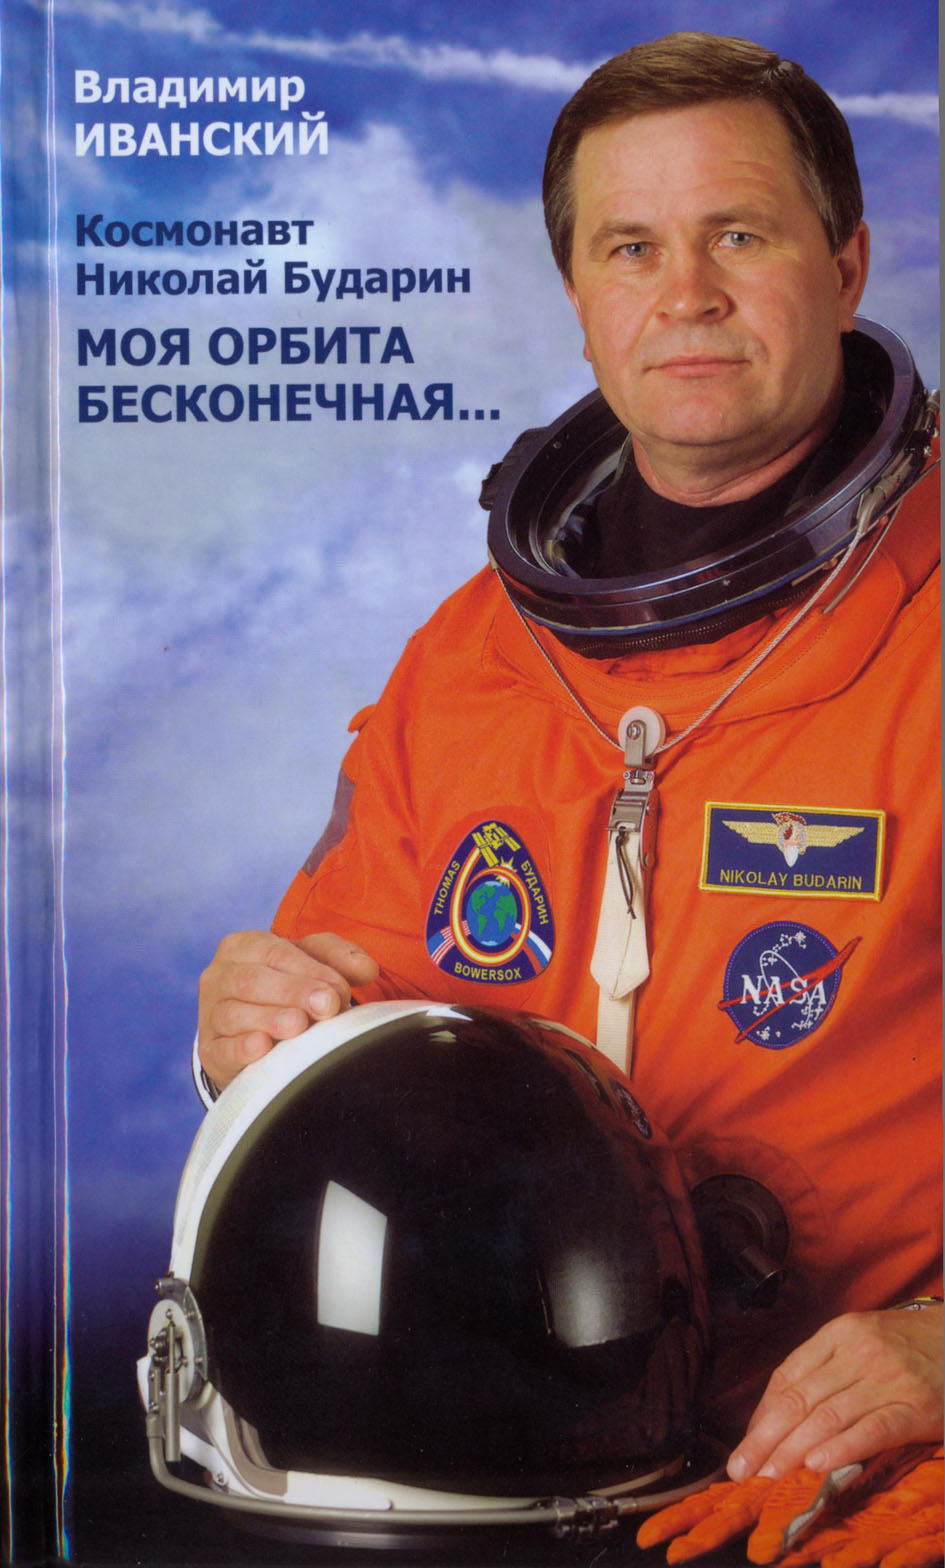 О бесконечной орбите Николая Бударина